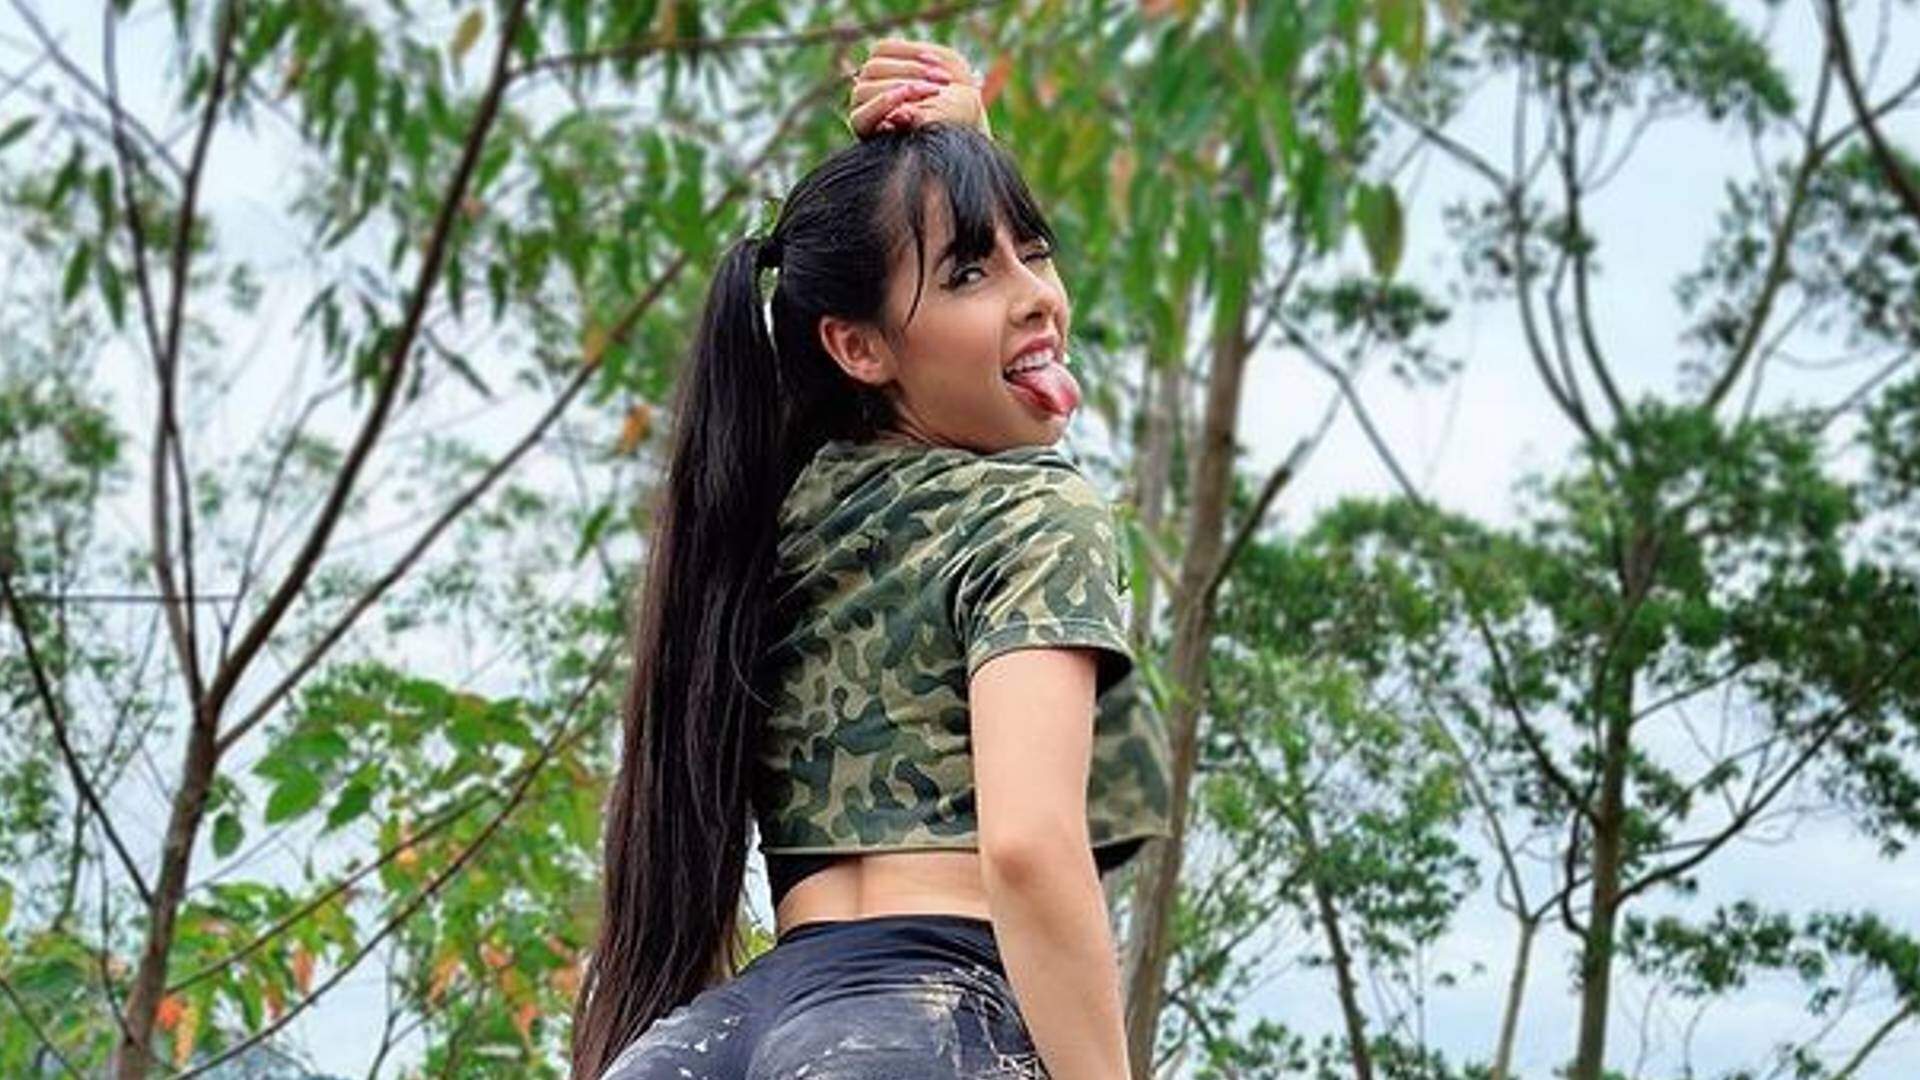 Em novo reality show, Juliana Bonde lambuza bumbum com lama: “Isso o BBB 23 nunca vai mostrar” - Metropolitana FM